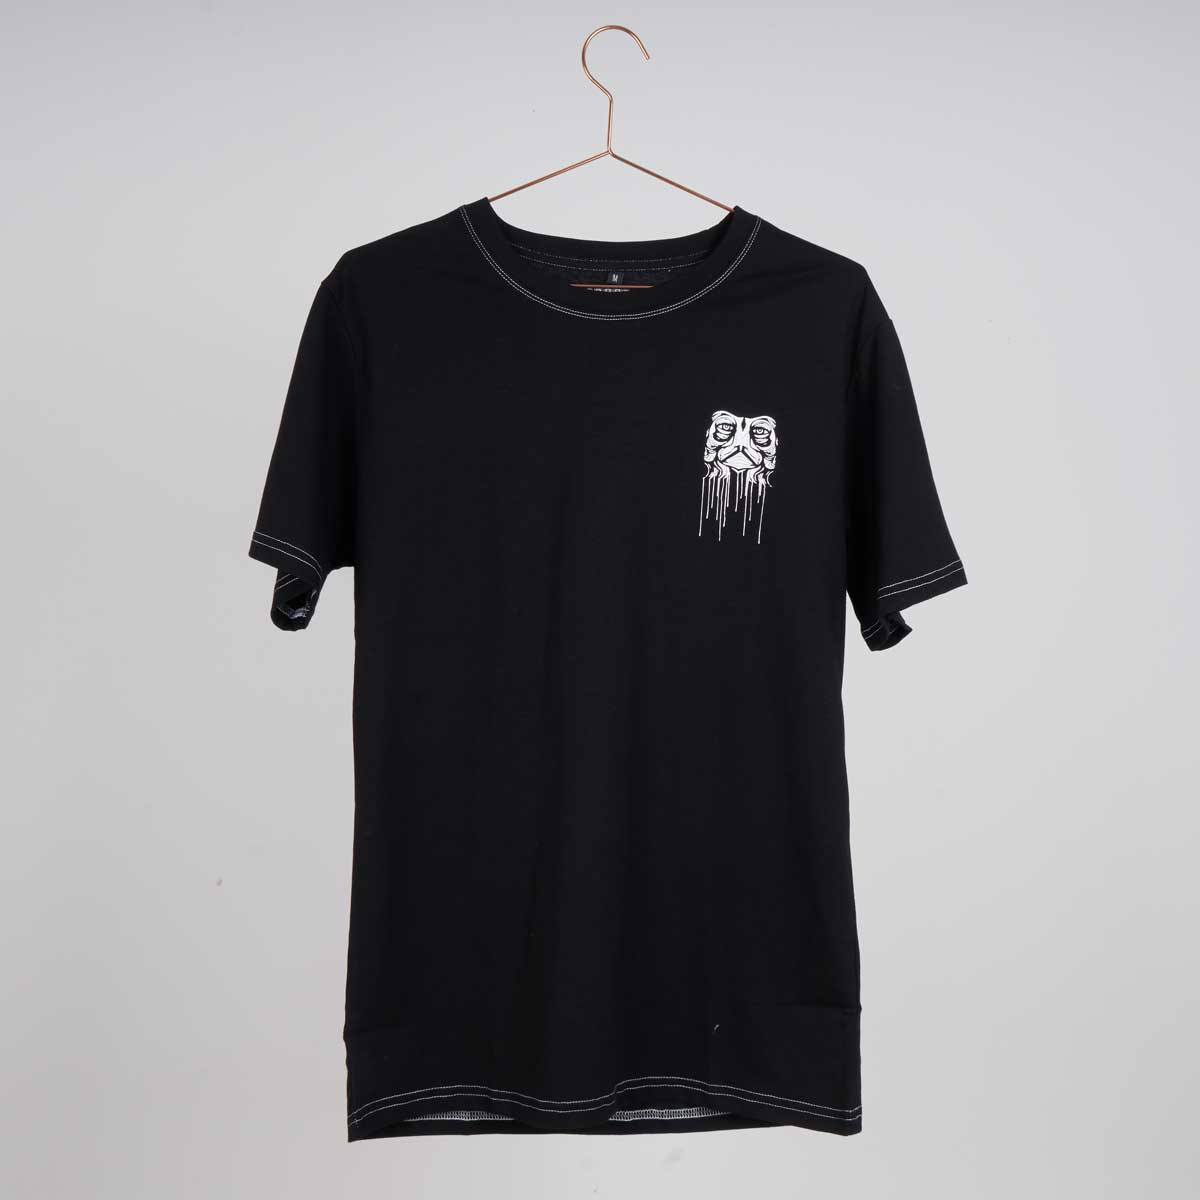 Kaltik Drip Face Black T-shirt-Kaltik-Aggressive Skate,black,Clothing,T-shirts